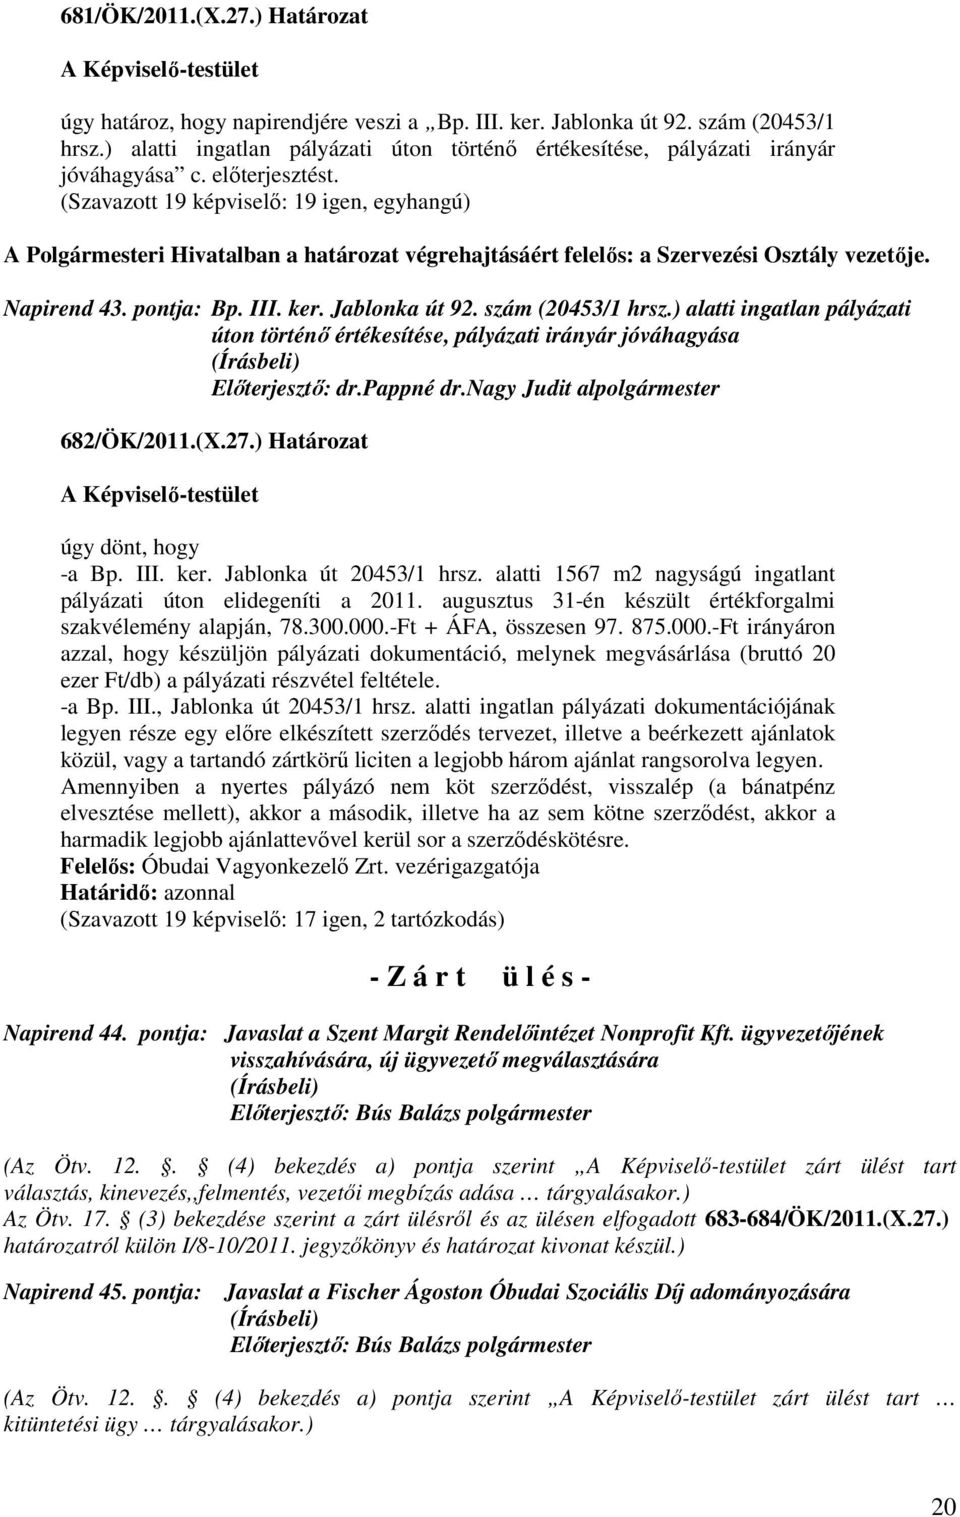 Jablonka út 92. szám (20453/1 hrsz.) alatti ingatlan pályázati úton történő értékesítése, pályázati irányár jóváhagyása 682/ÖK/2011.(X.27.) Határozat úgy dönt, hogy -a Bp. III. ker.